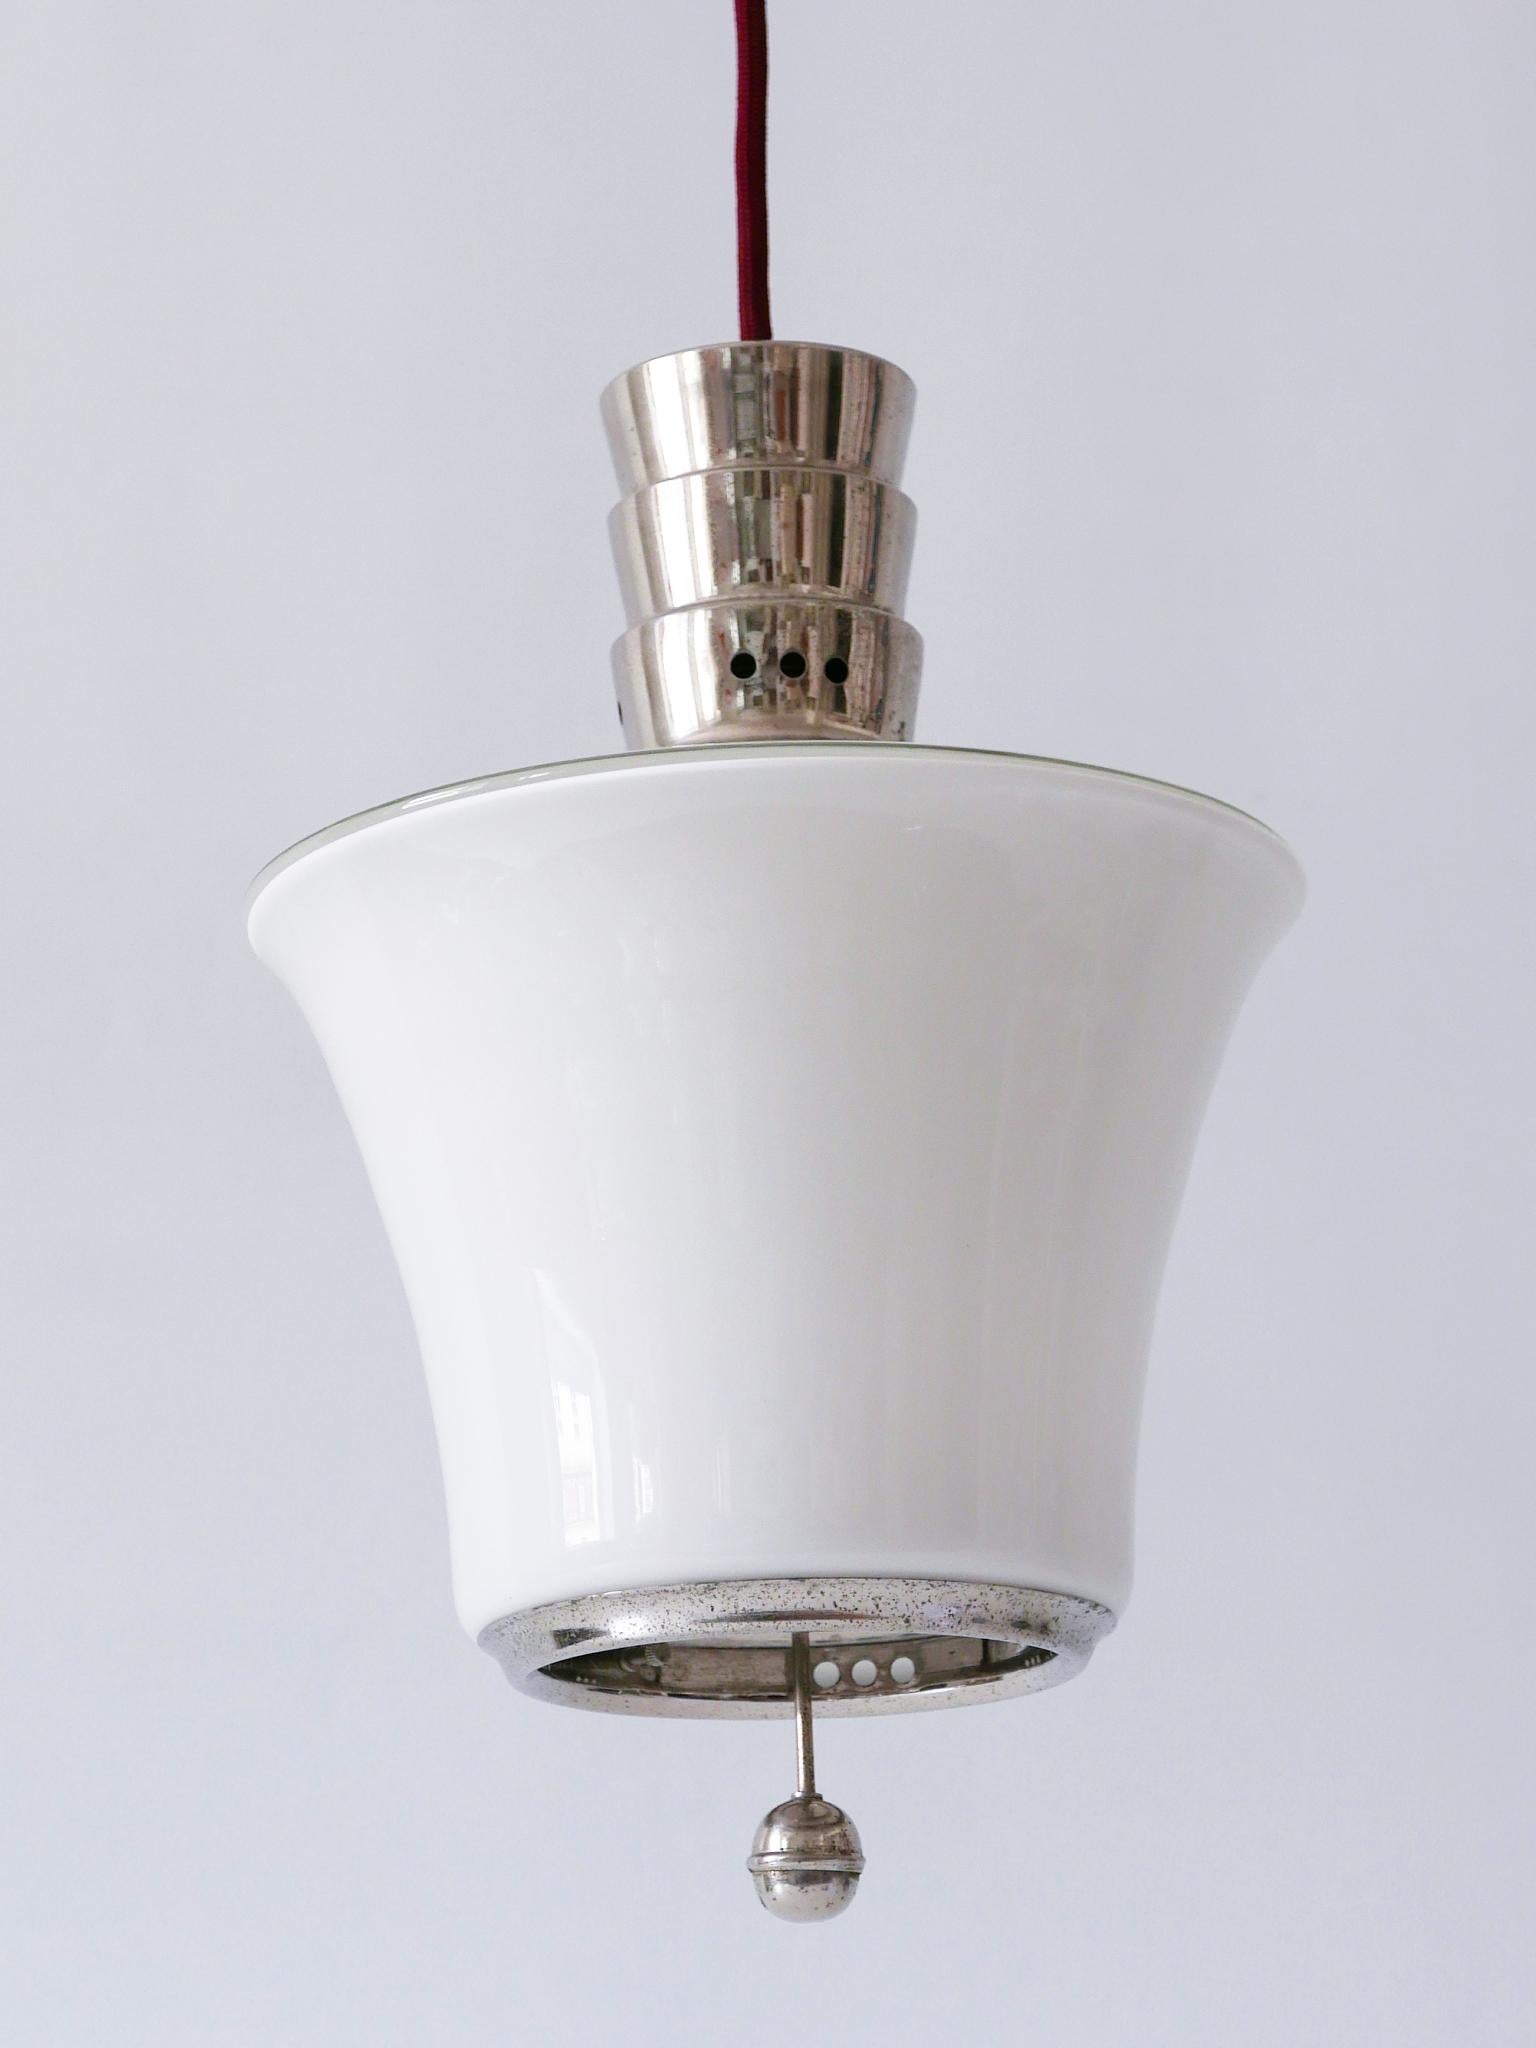 Exceptional Dr. Twerdy Original Bauhaus Art Deco Pendant Lamp, 1920s, Germany For Sale 8